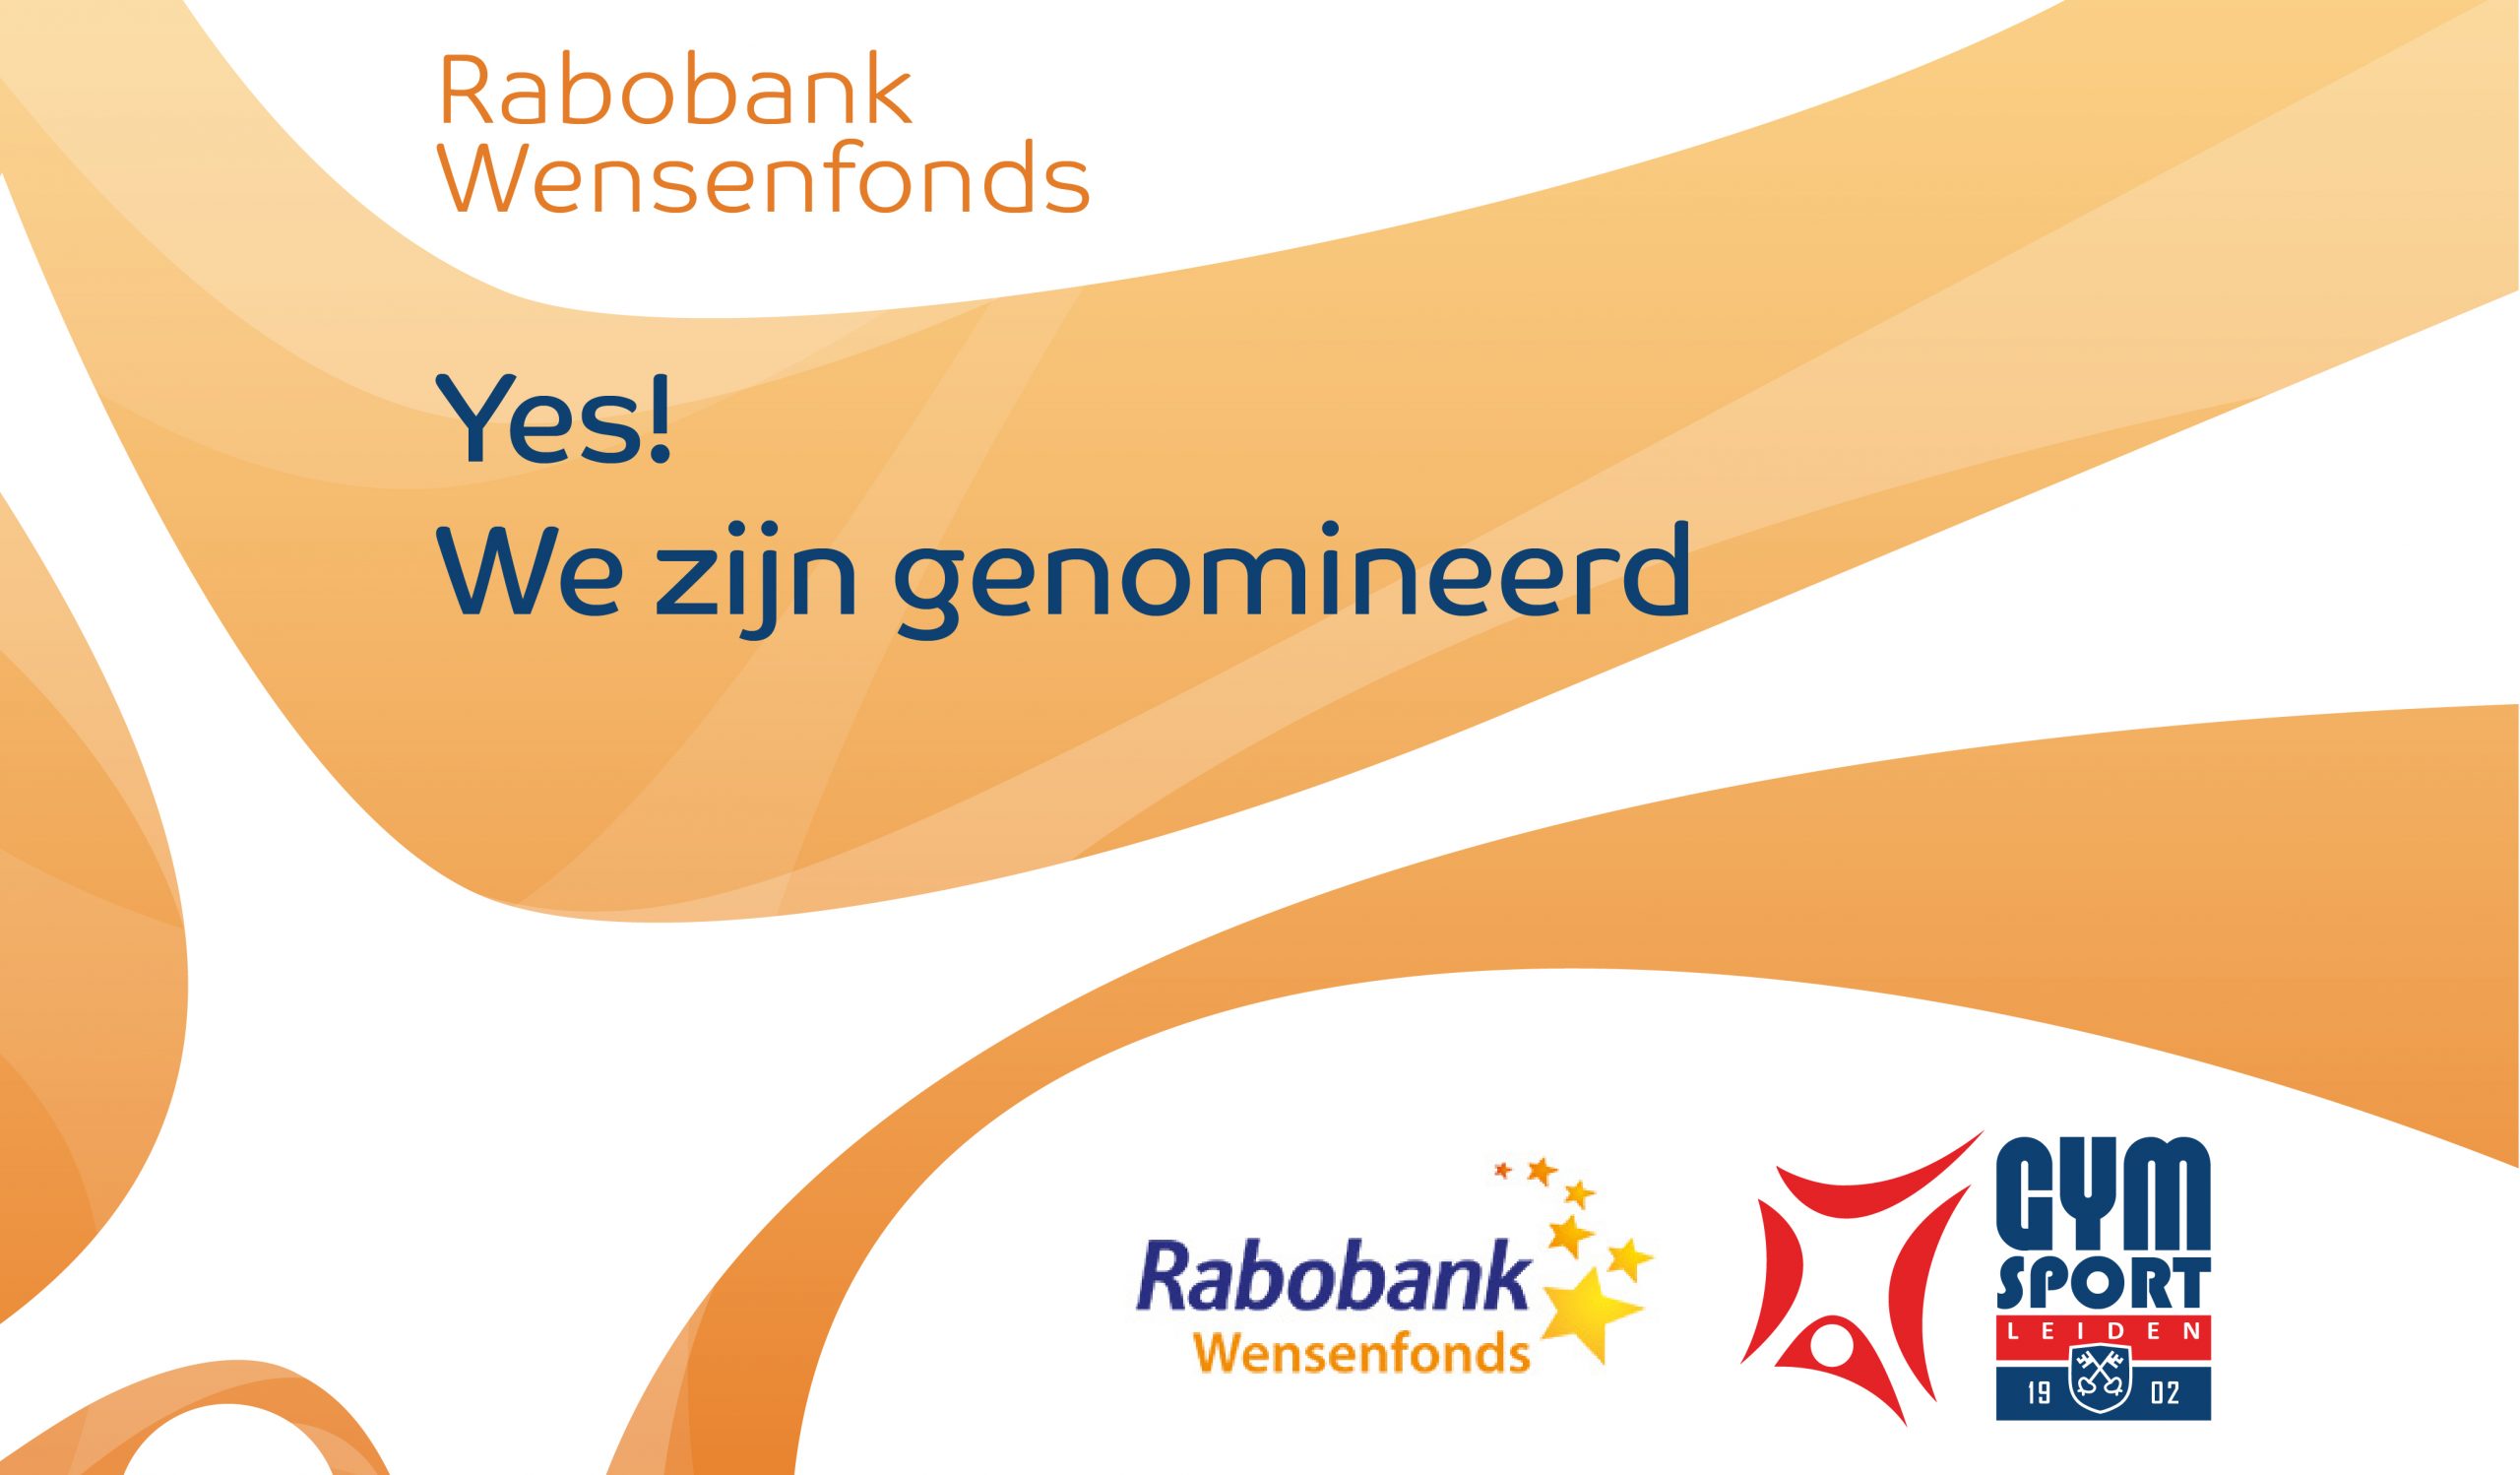 Genomineerd voor Rabobank Wensenfonds